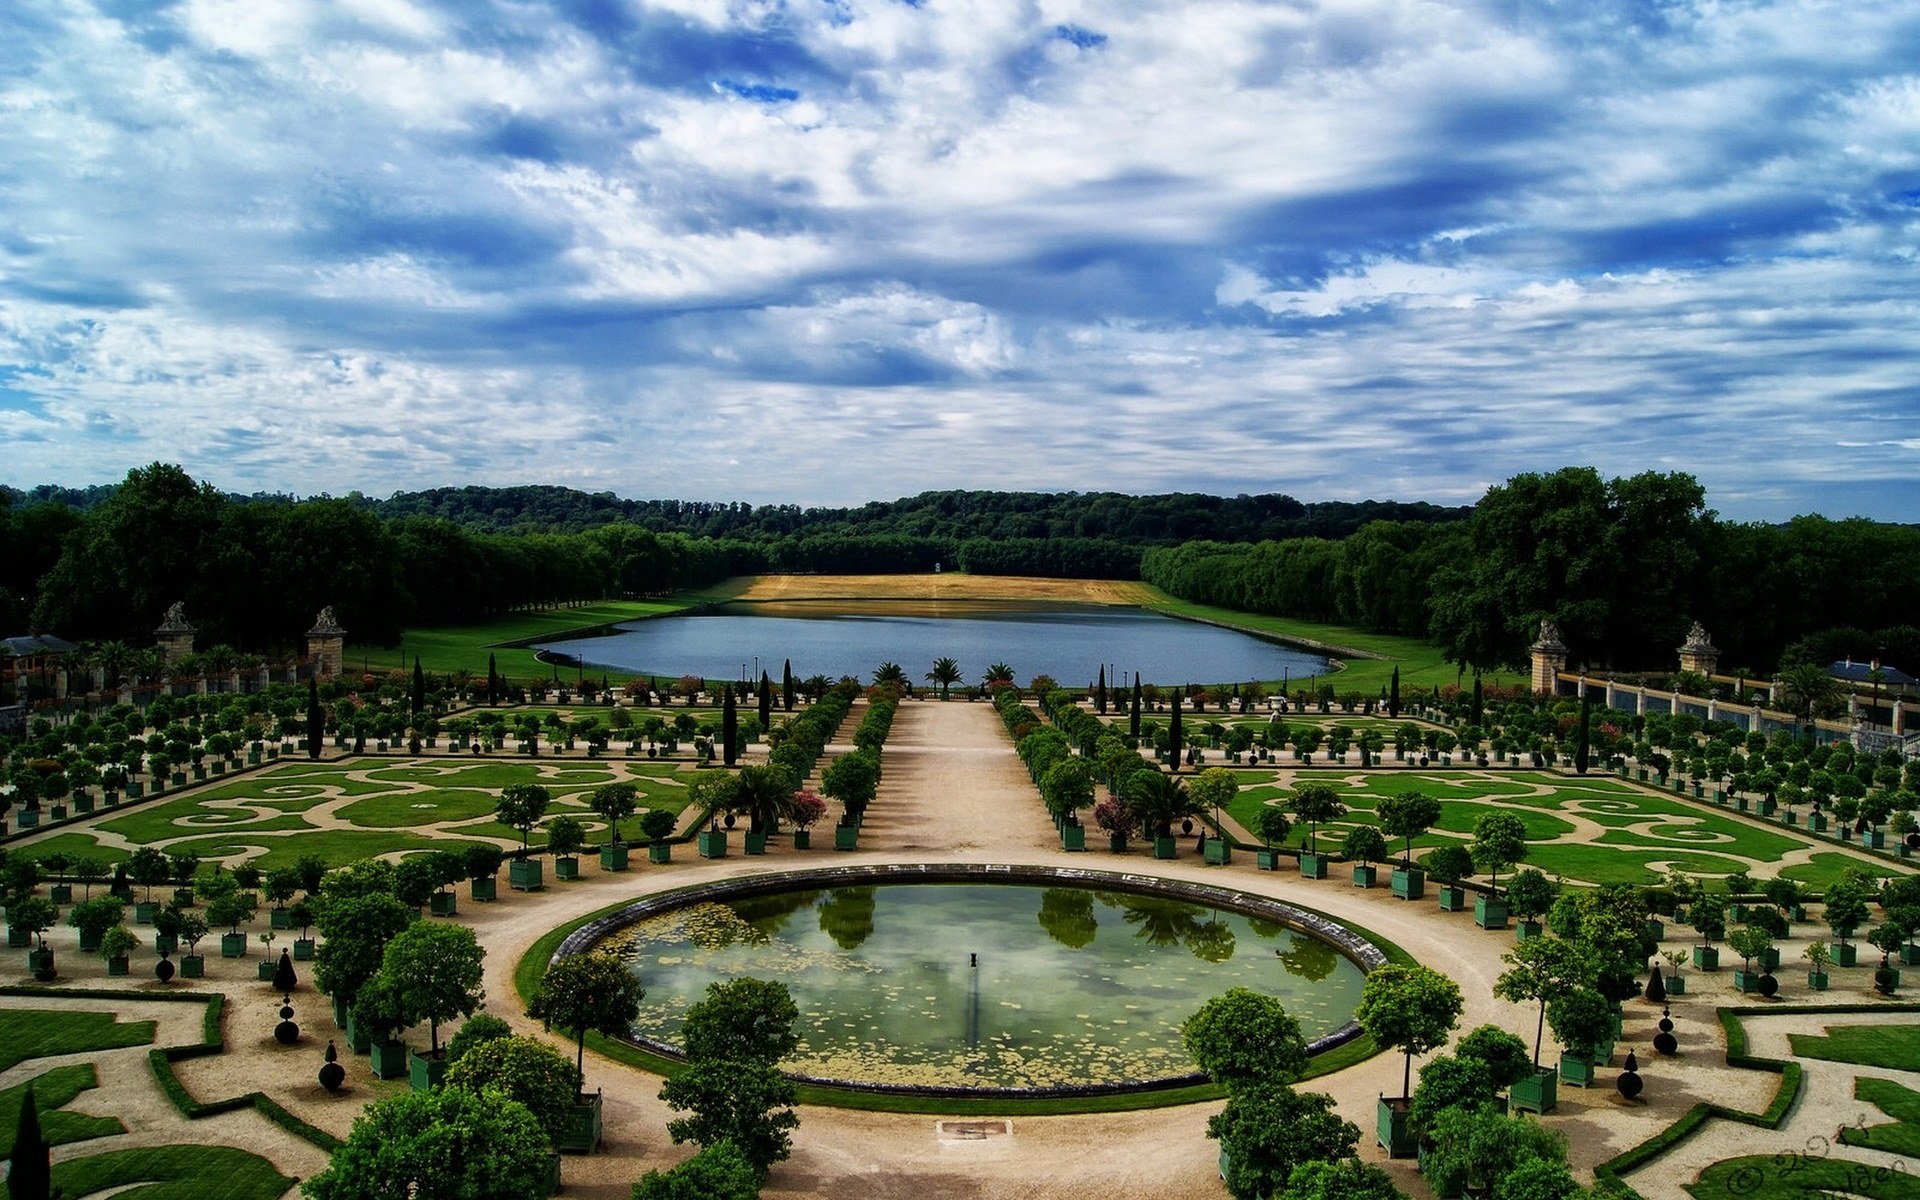 Про версаль. Версальский дворец и парк. Французский парк Версальский парк. Дворец и парк в Версале Франция. Парковый ансамбль Версаля во Франции.